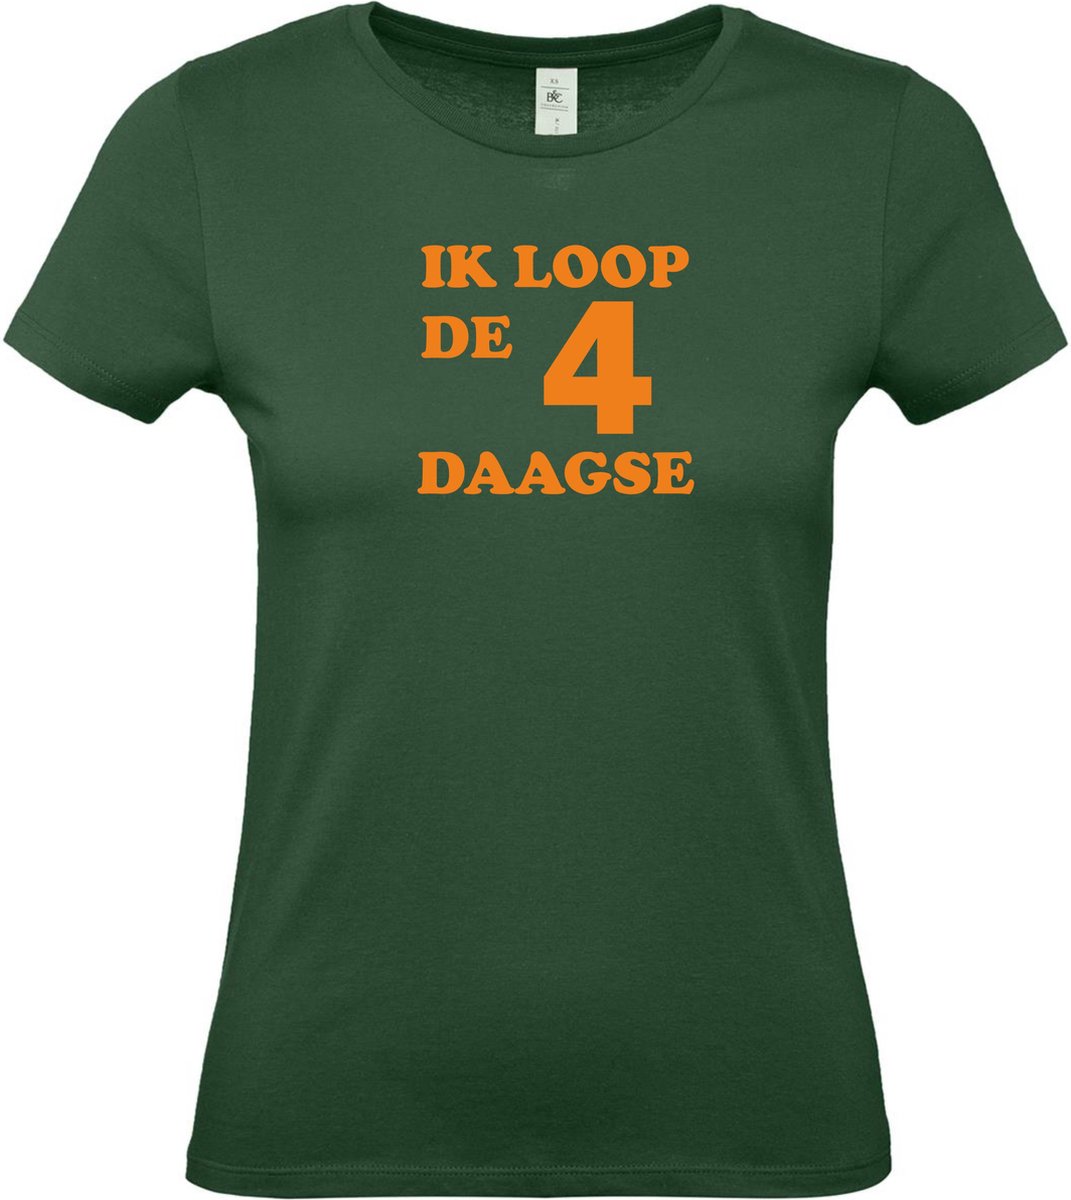 Dames t-shirt Ik loop de 4 daagse |Wandelvierdaagse | vierdaagse Nijmegen | Roze woensdag | Groen | maat M